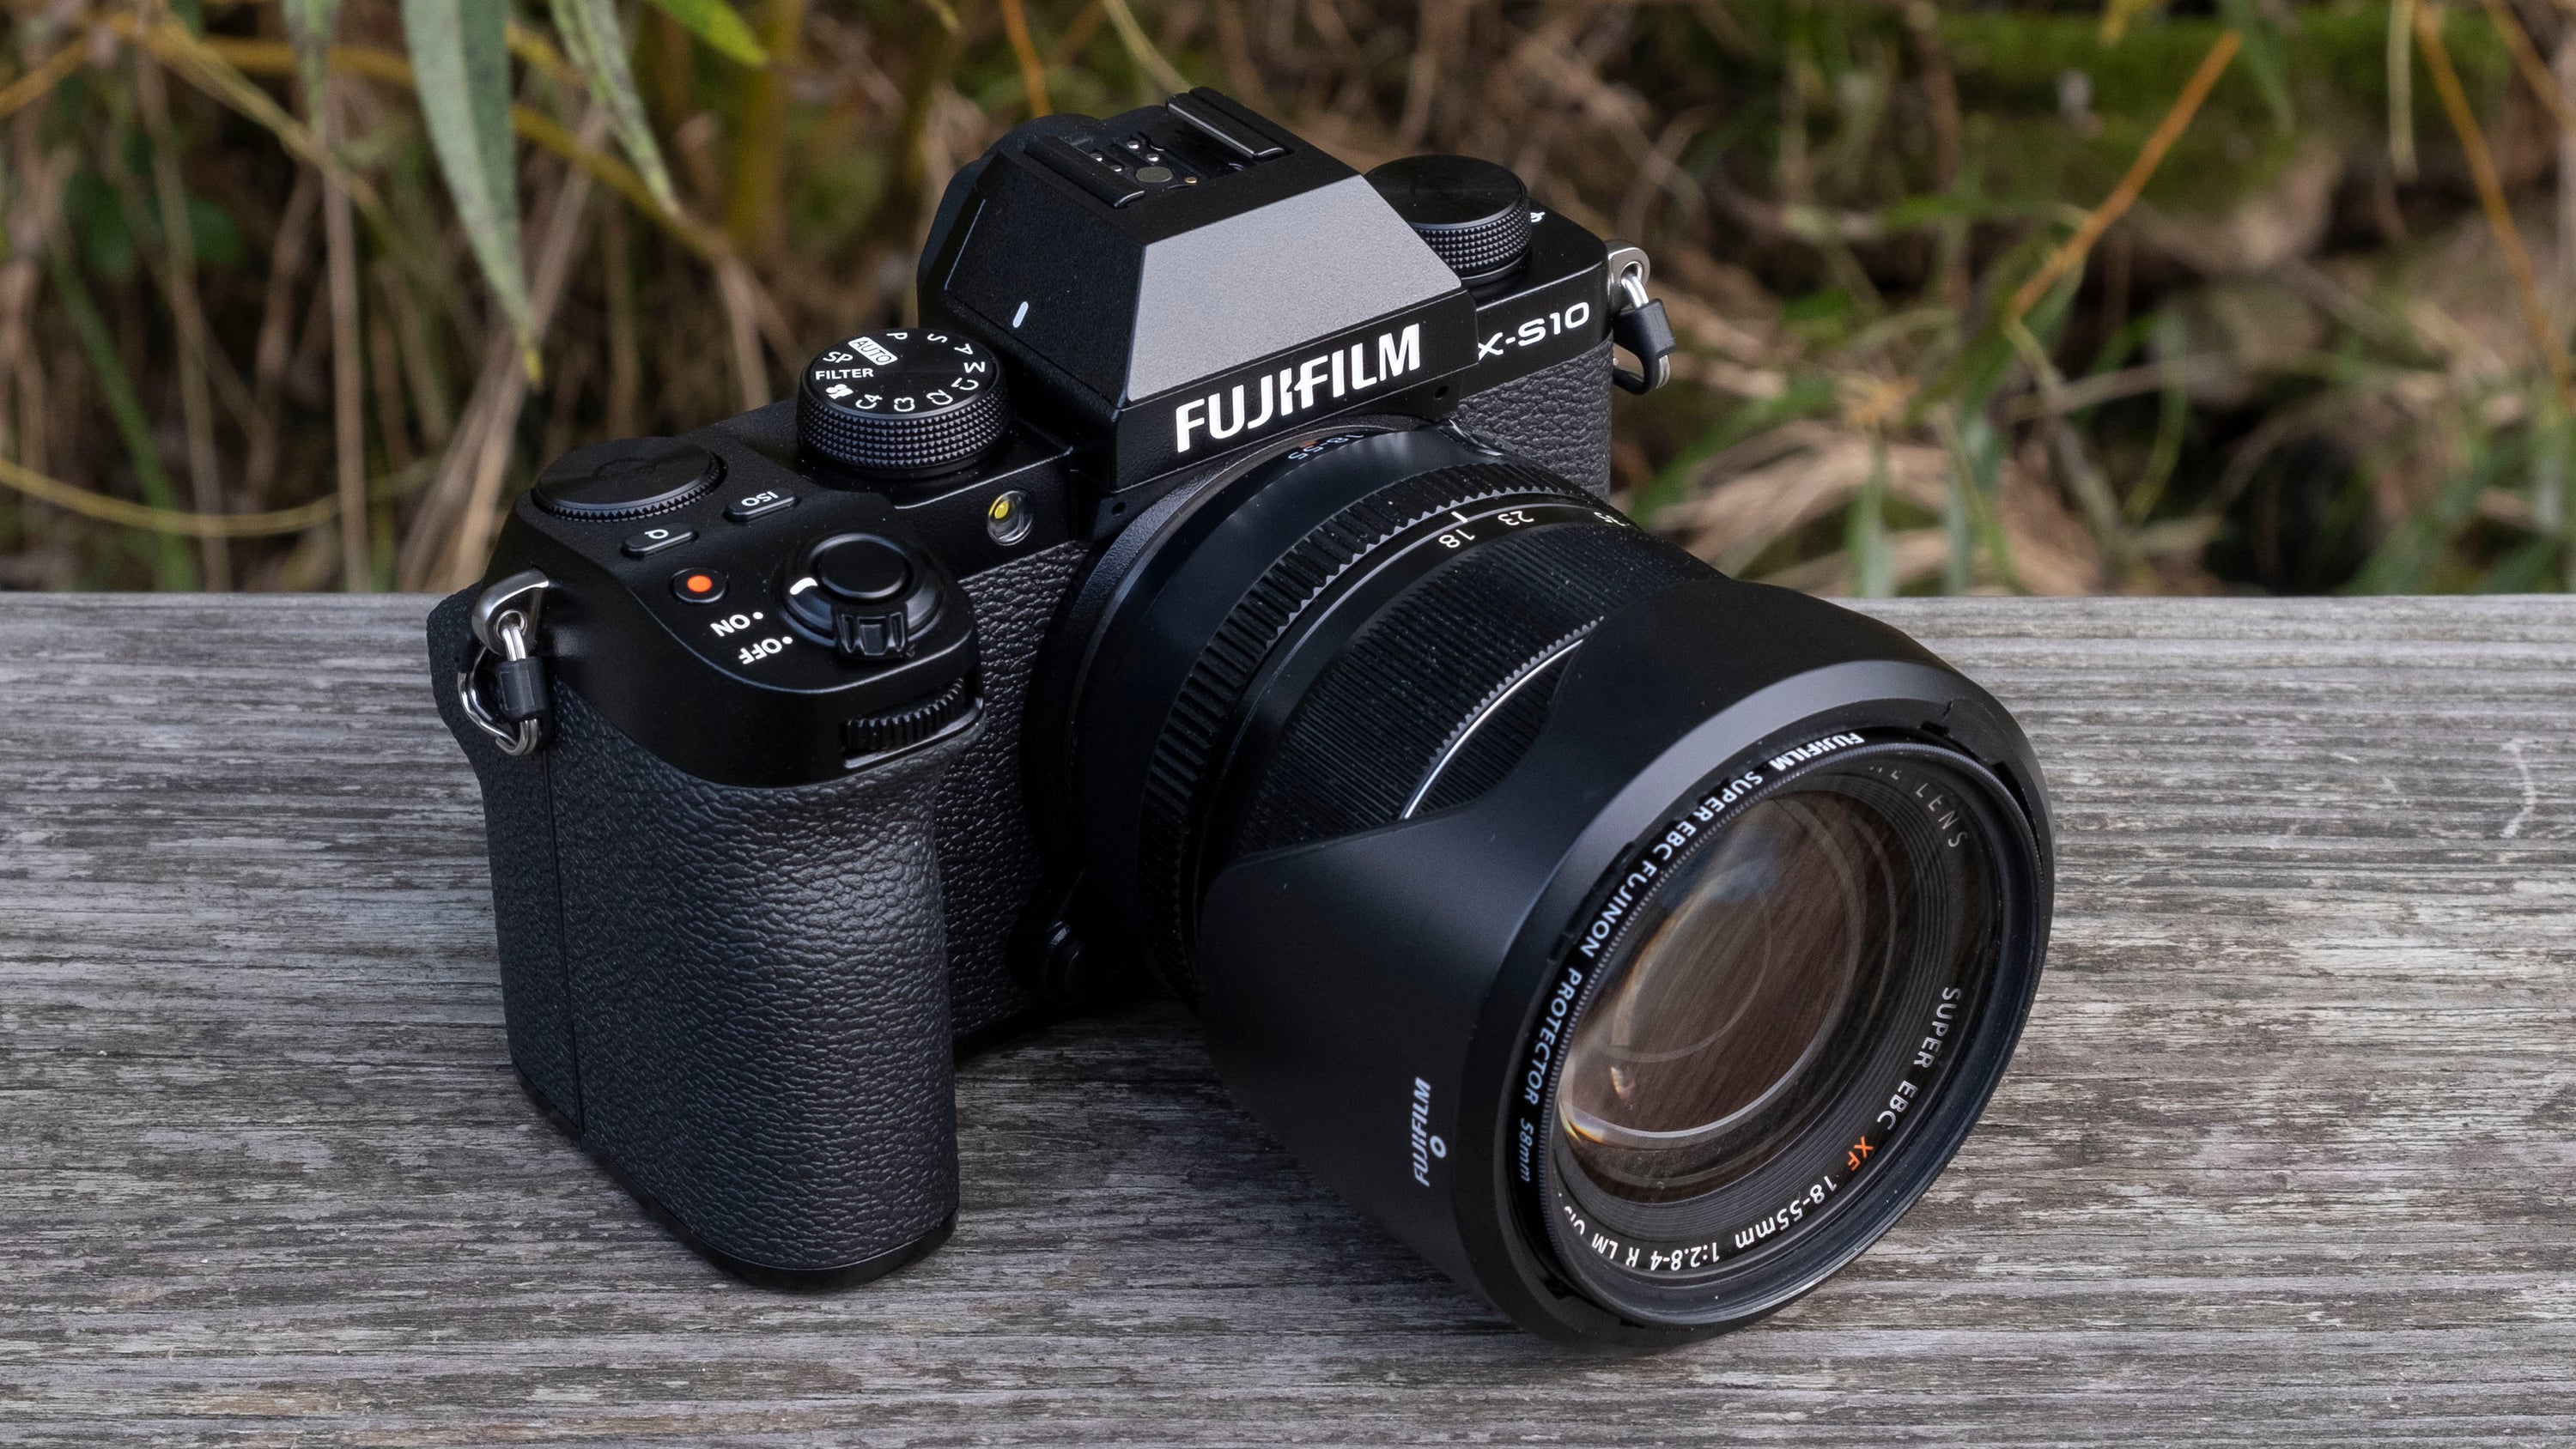 Le Fujifilm X-S10 est un appareil photo hybride compact mais puissant qui offre une gamme de fonctionnalités professionnelles. 